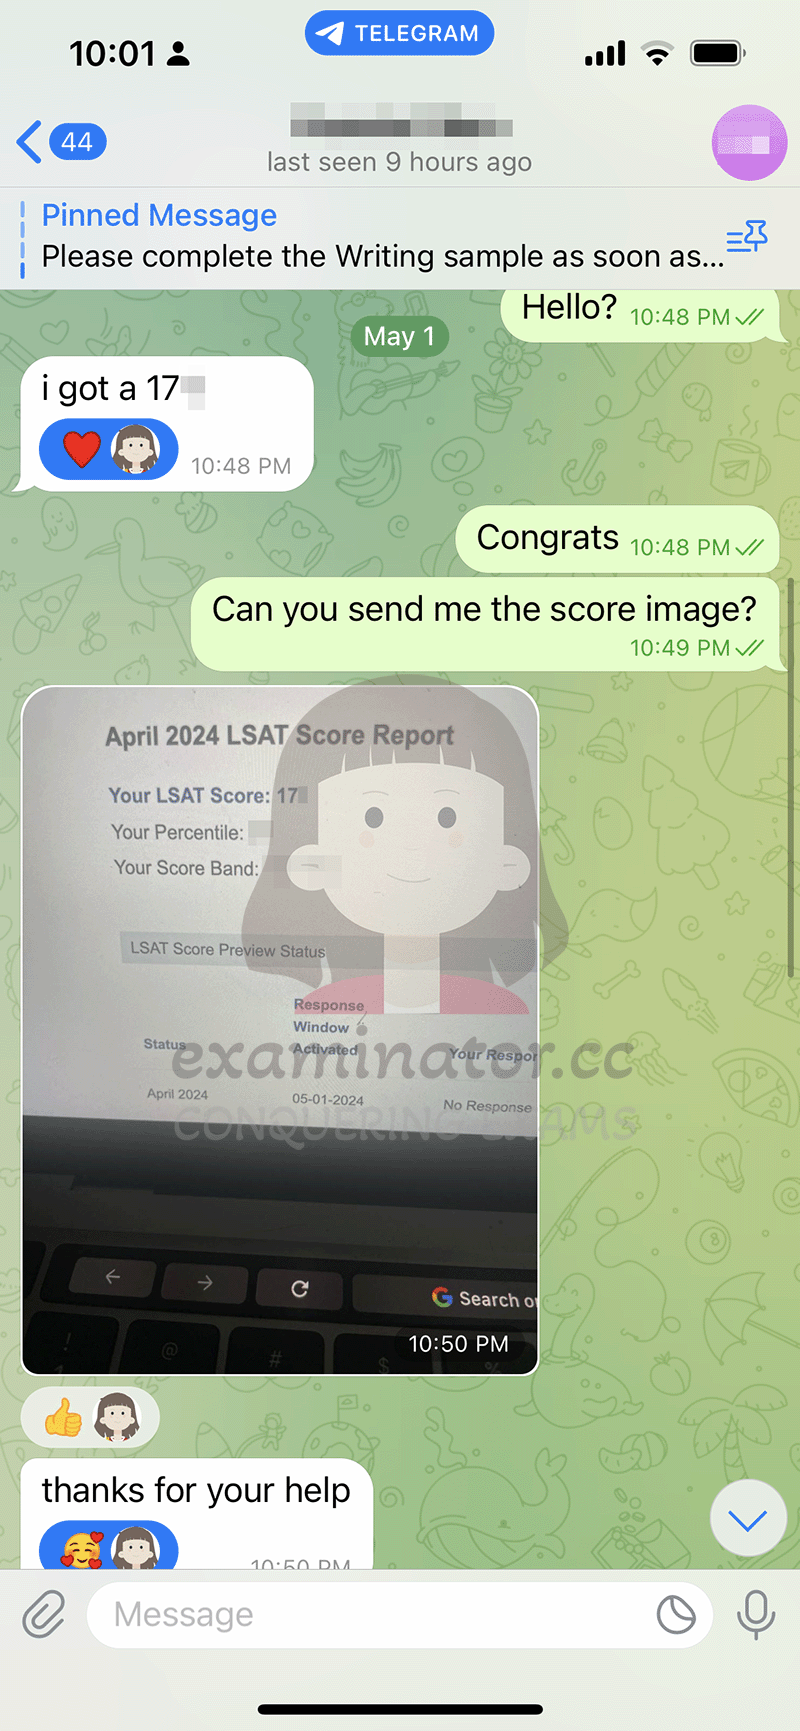 April 2024 LSAT cheating score